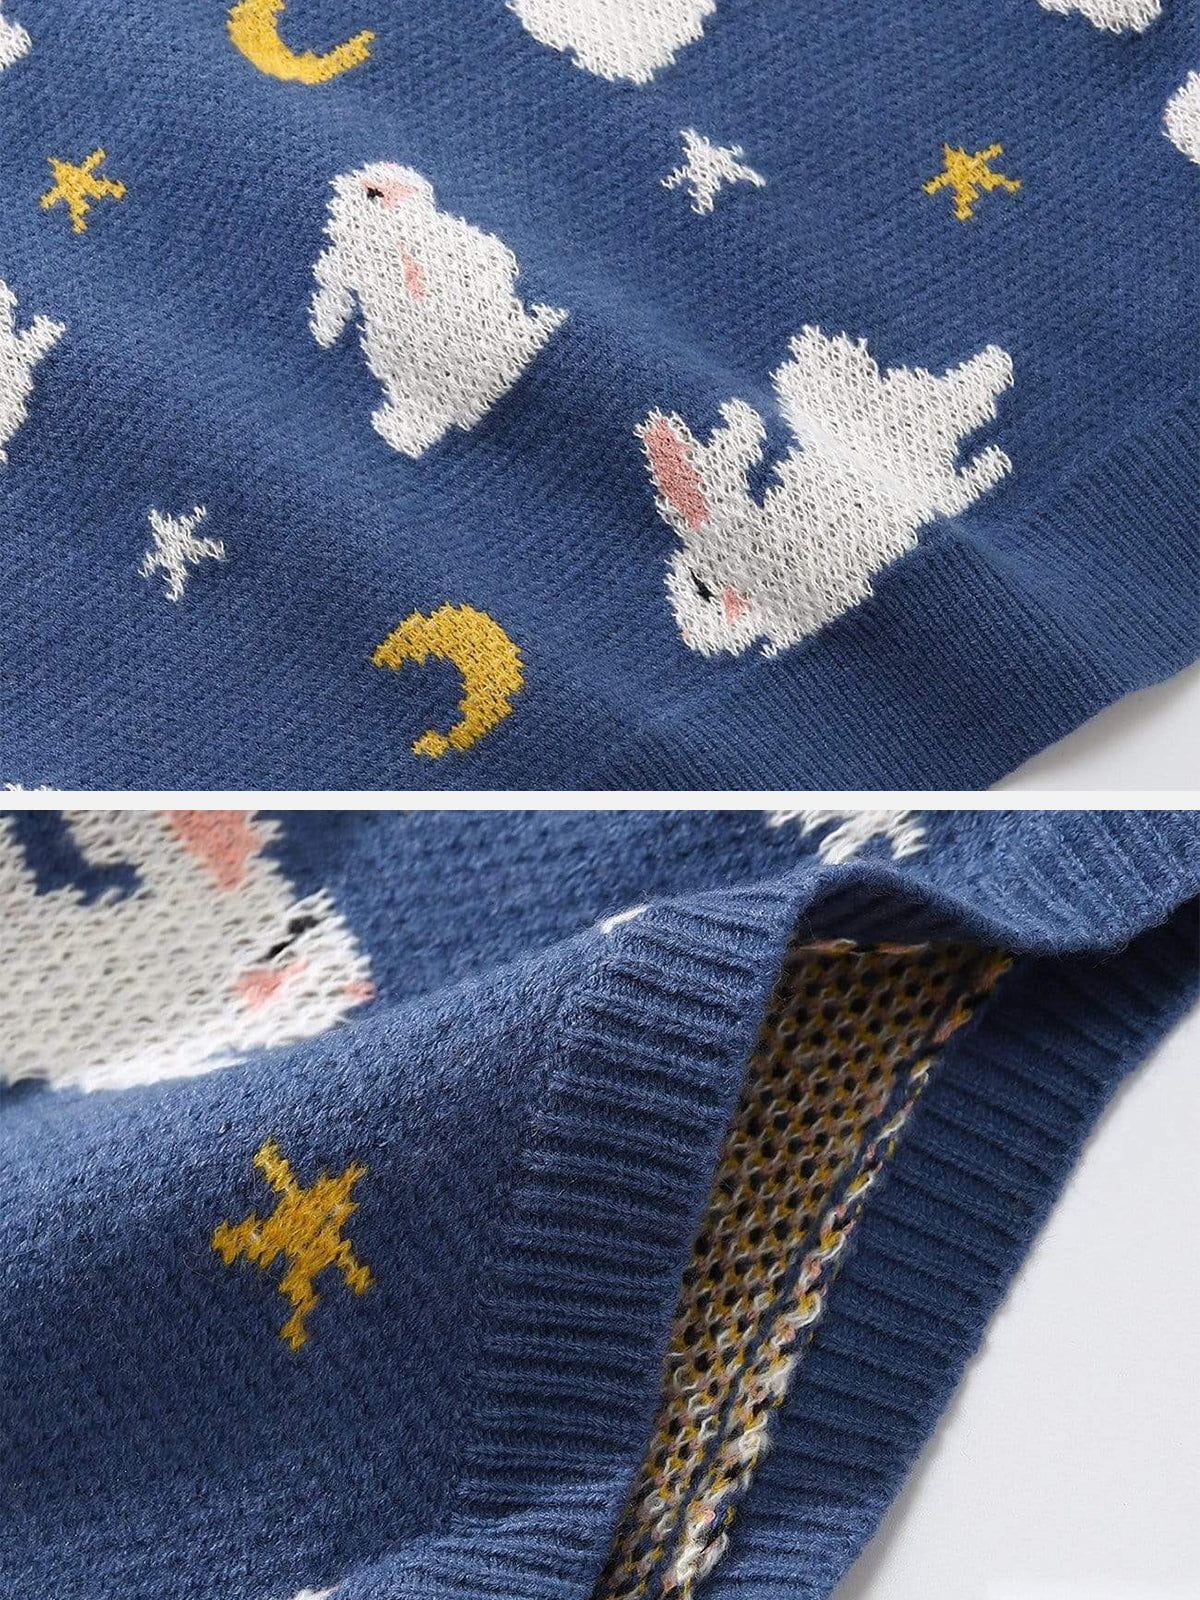 Moon Rabbit Knit Sweater Vest Streetwear Brand Techwear Combat Tactical YUGEN THEORY